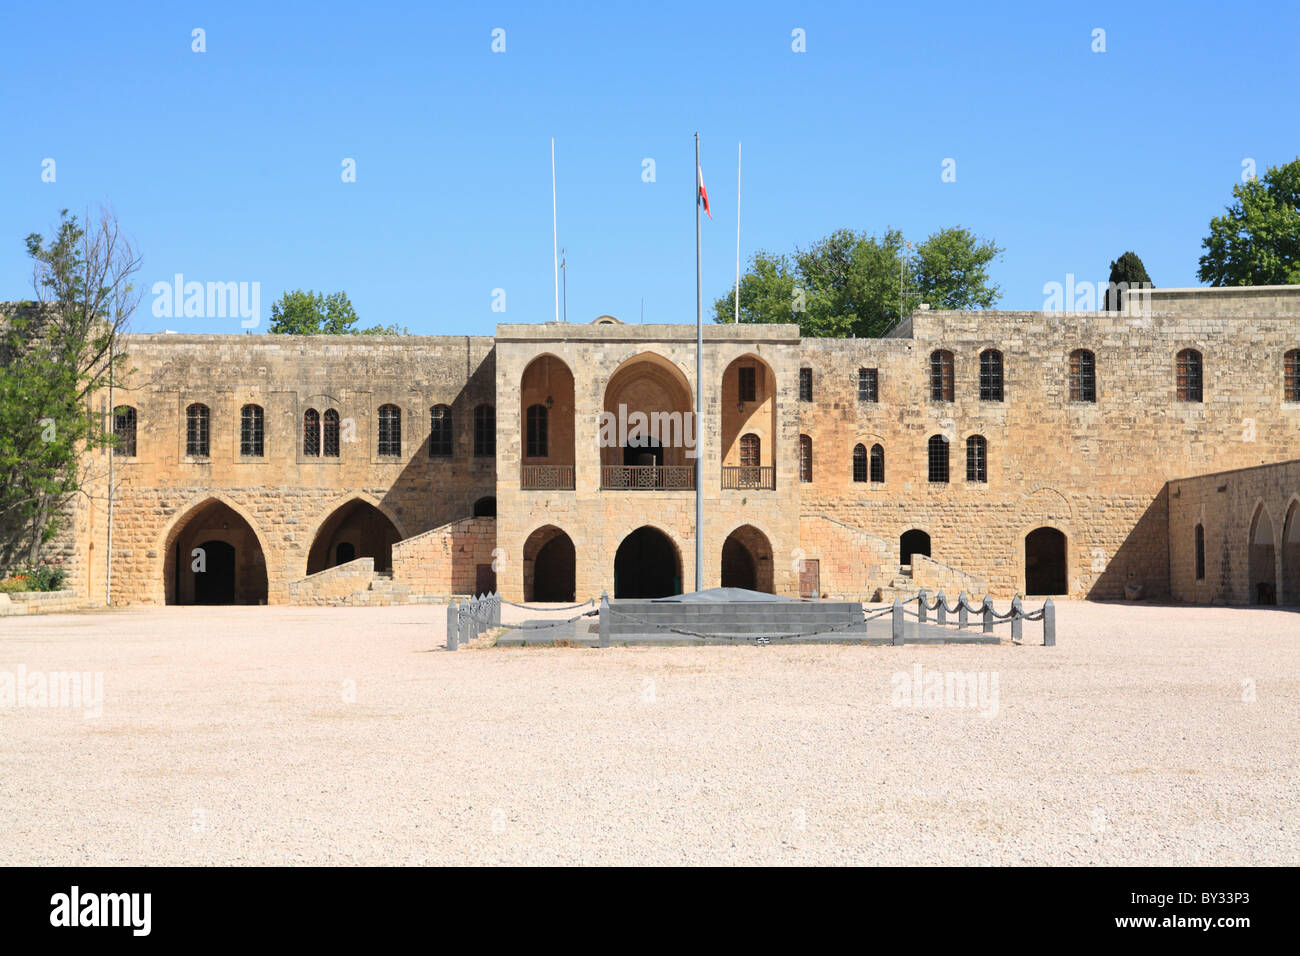 Courtyard, Palace of Beiteddine, Lebanon, Middle East Stock Photo